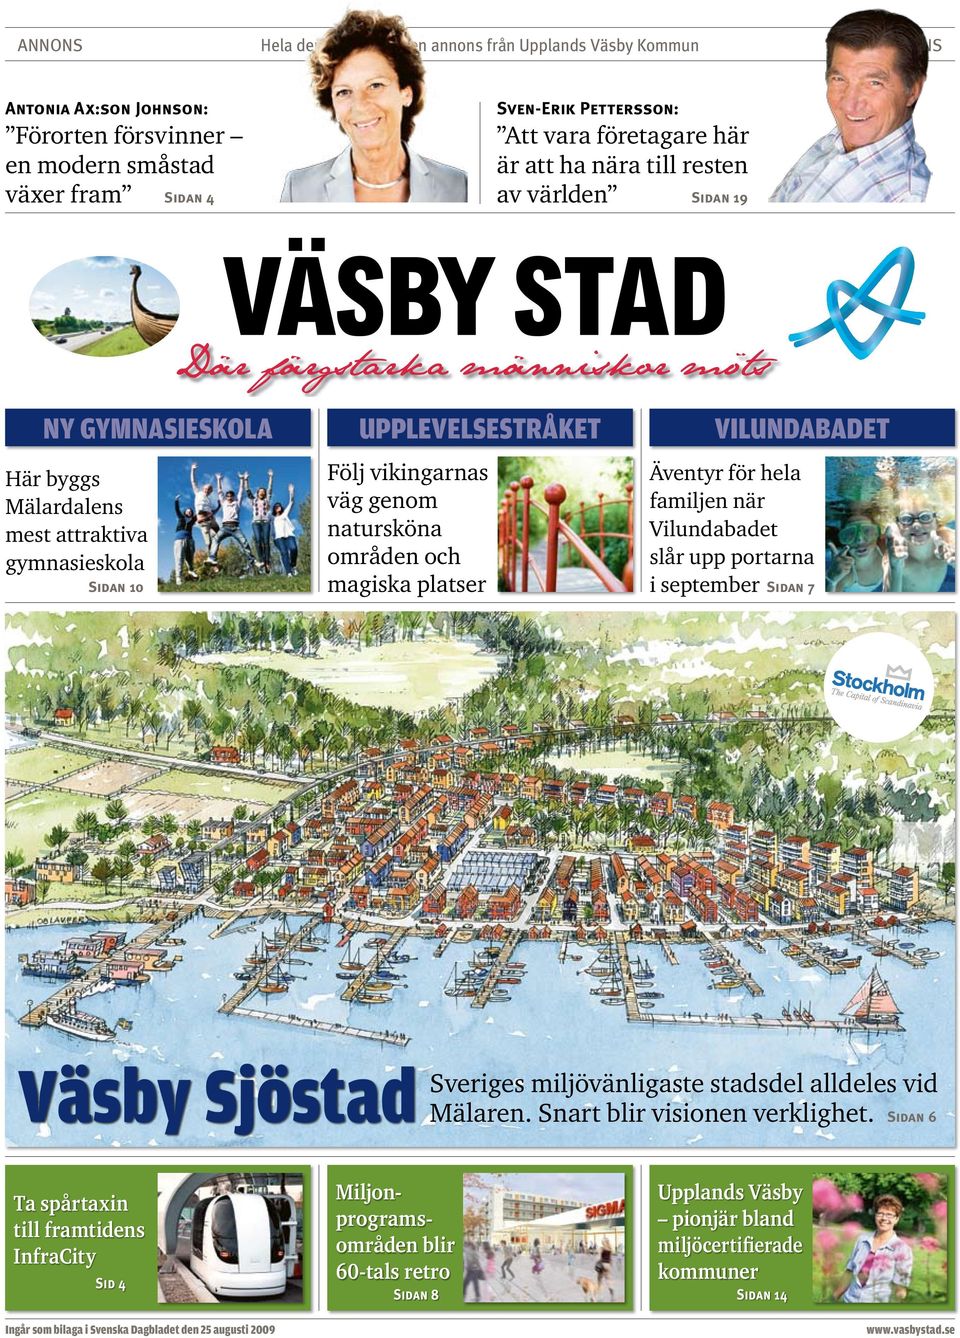 Vilundabadet slår upp portarna i september Sidan 7 Väsby Sjöstad Sveriges miljövänligaste stadsdel alldeles vid Mälaren. Snart blir visionen verklighet.